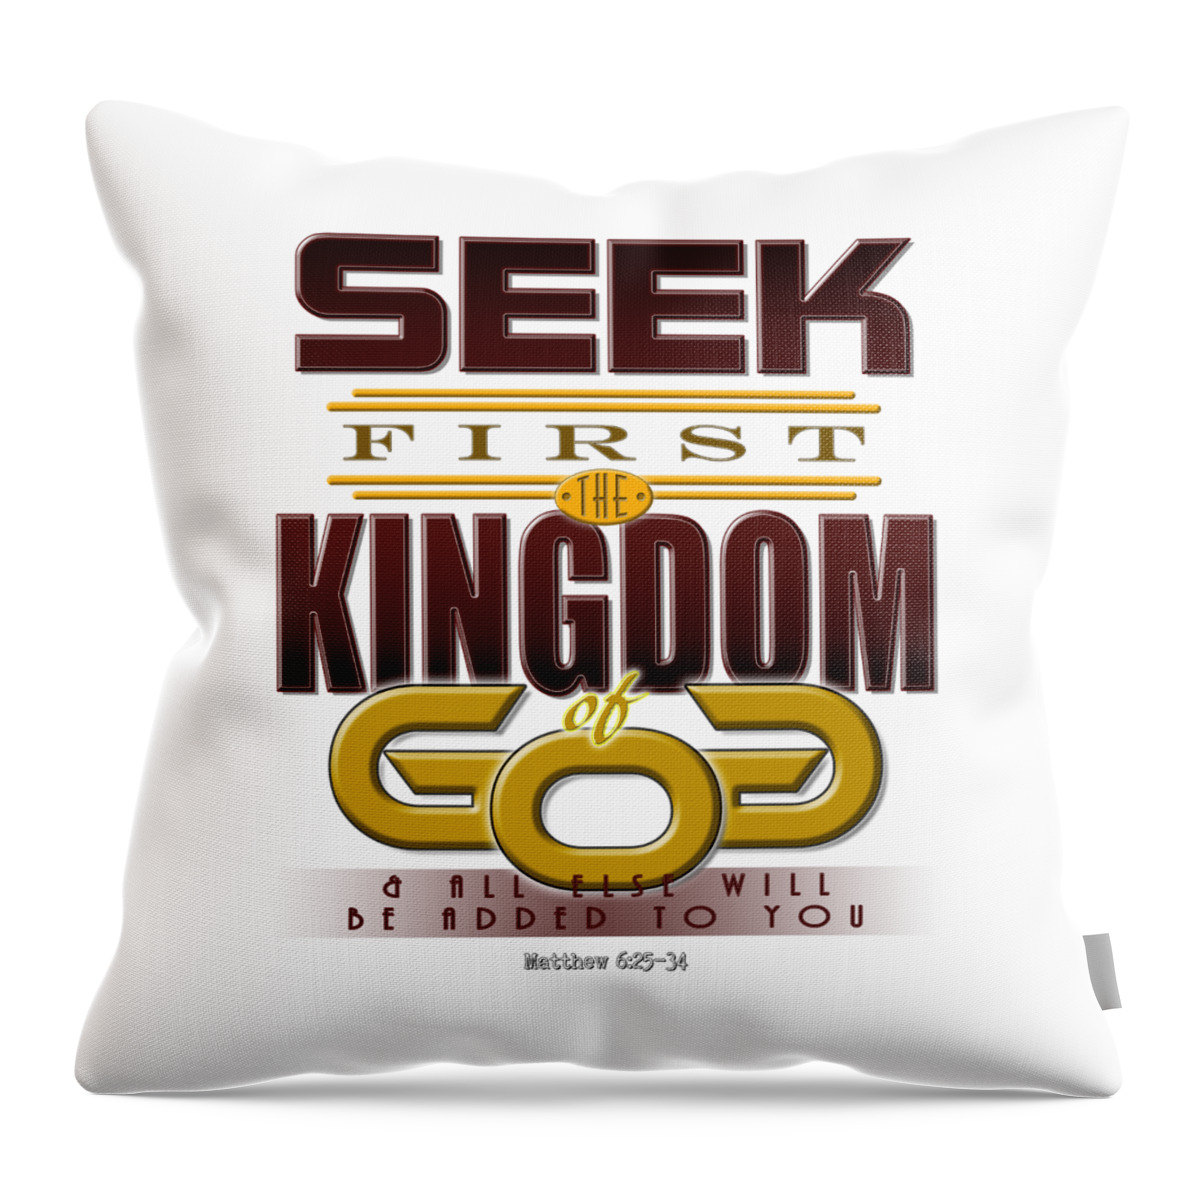 Bible Throw Pillow featuring the digital art Seek First by Rick Bartrand